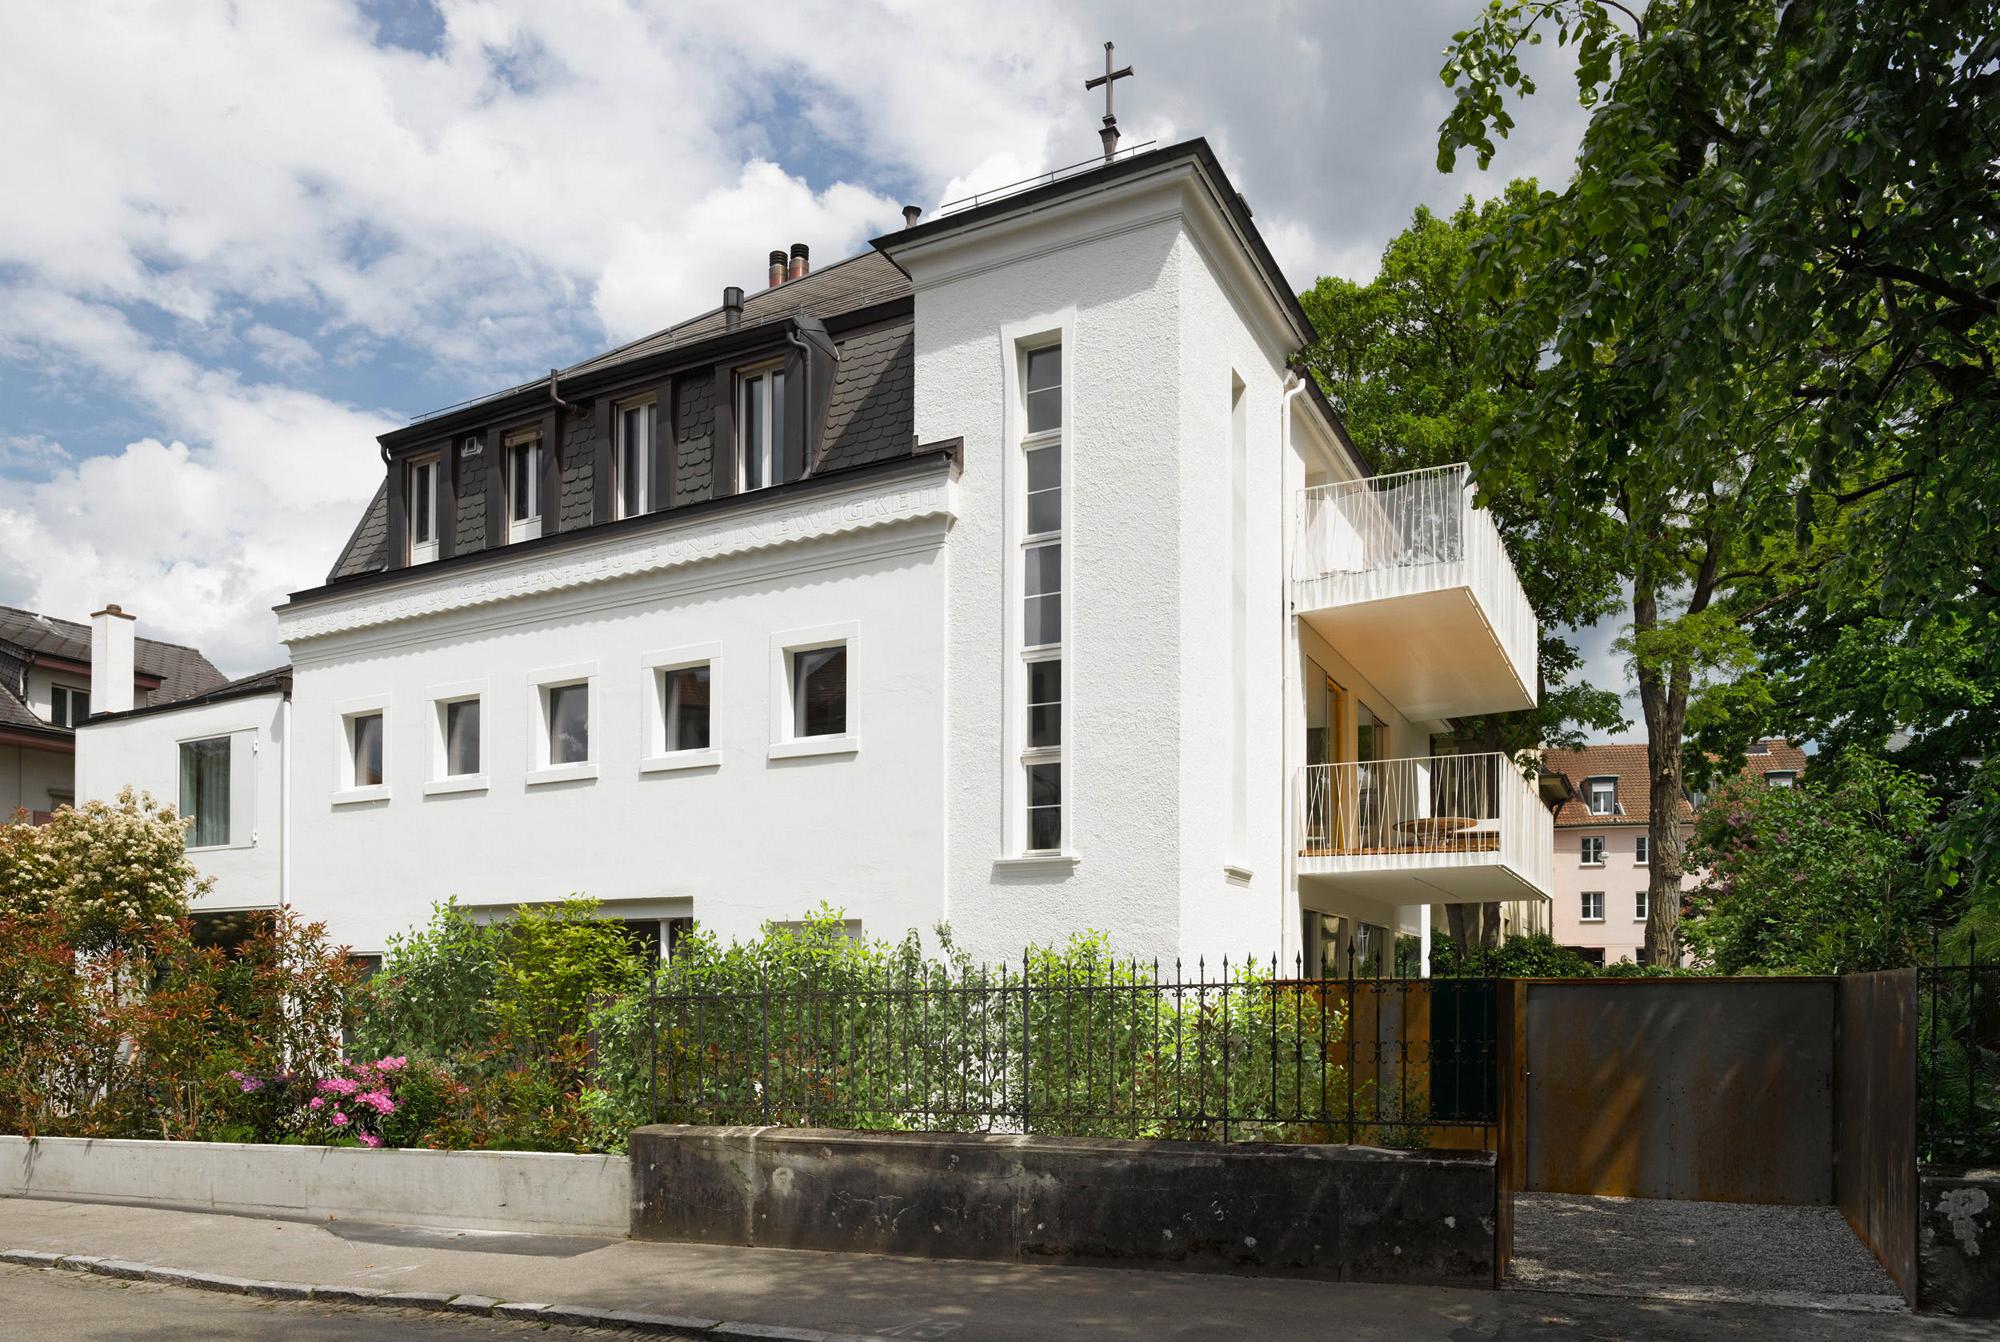 Architektur-Reportage Bern: ausser dem Kreuz auf dem Dach, erinnert kaum etwas an eine Kirche